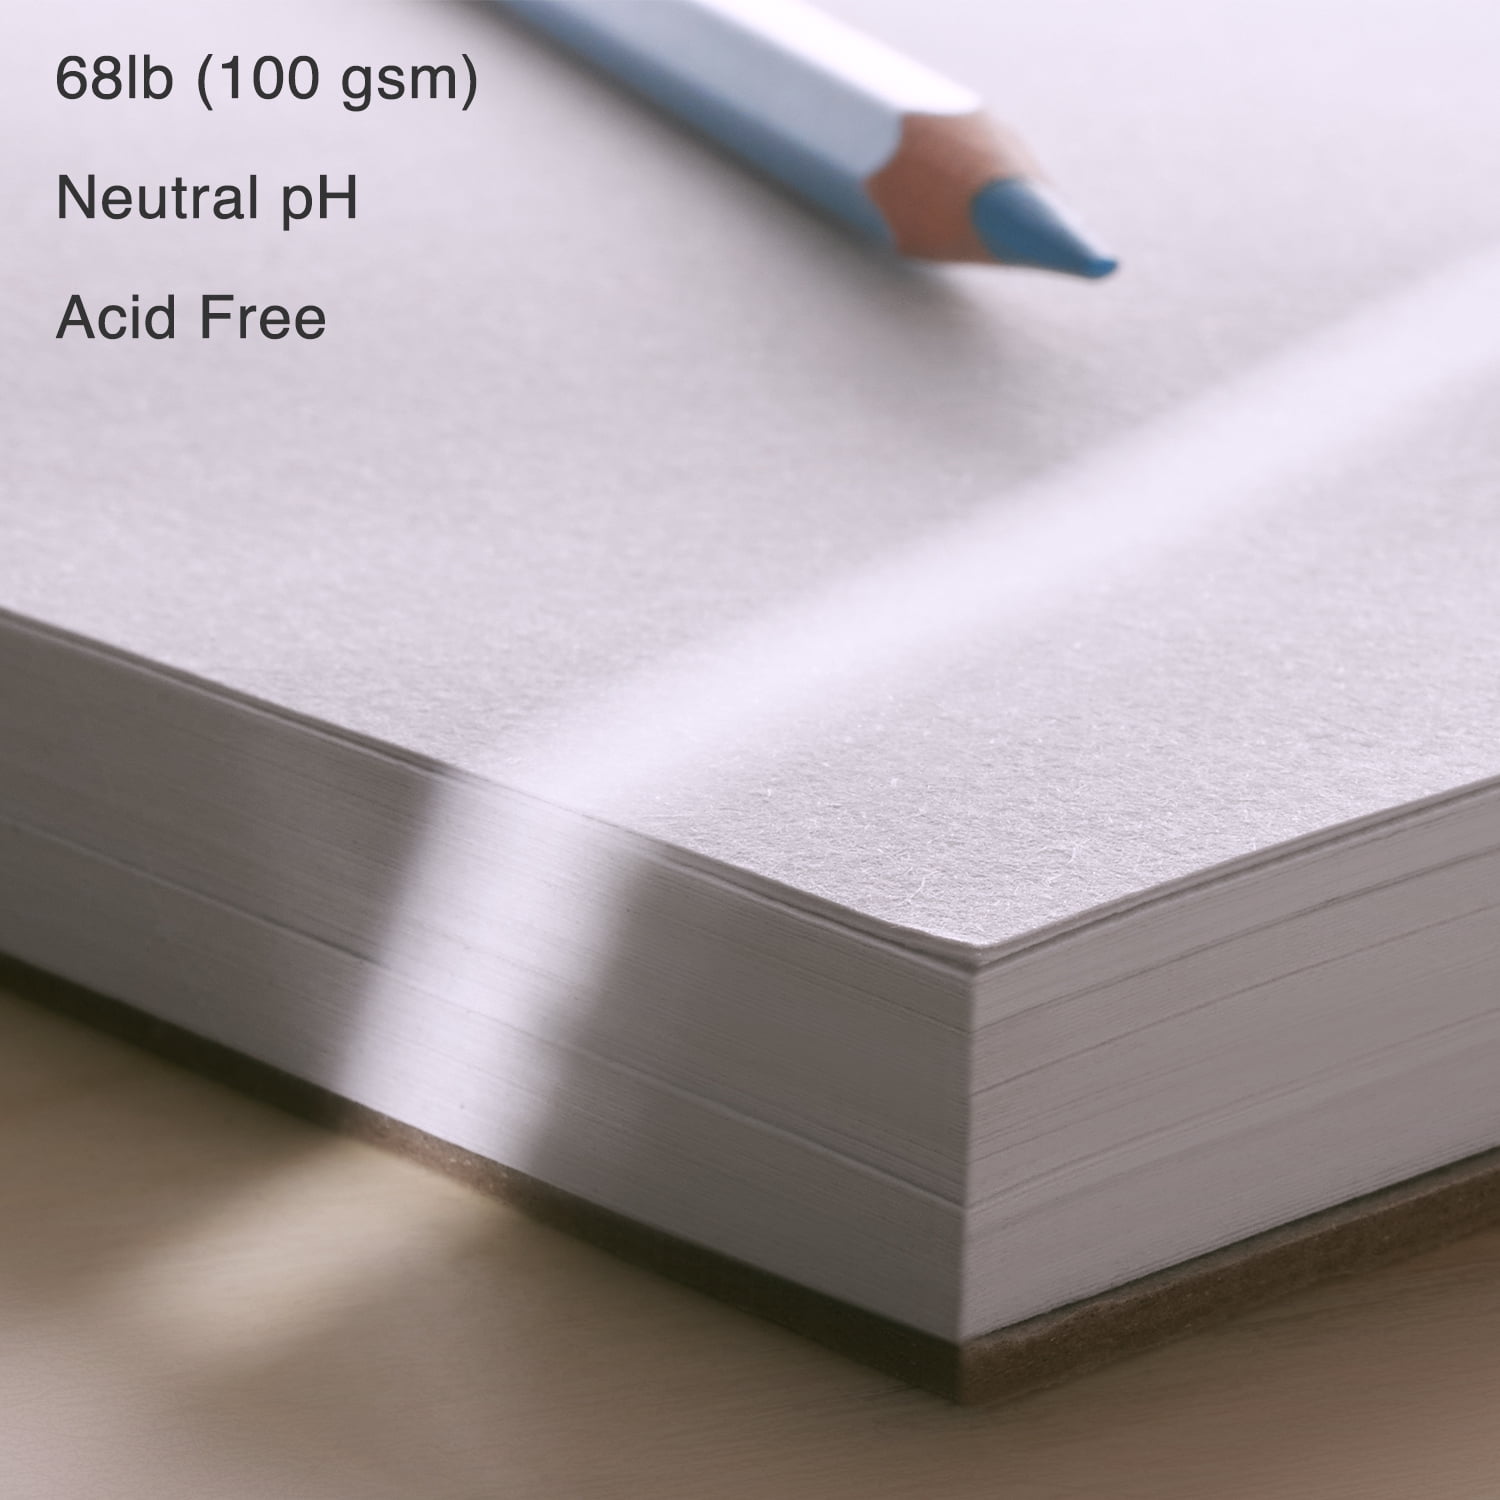 Artisto 5.5x8.5 Premium Sketch Book Set, Spiral Bound, Pack of 3, 300  Sheets (125g/m2) 